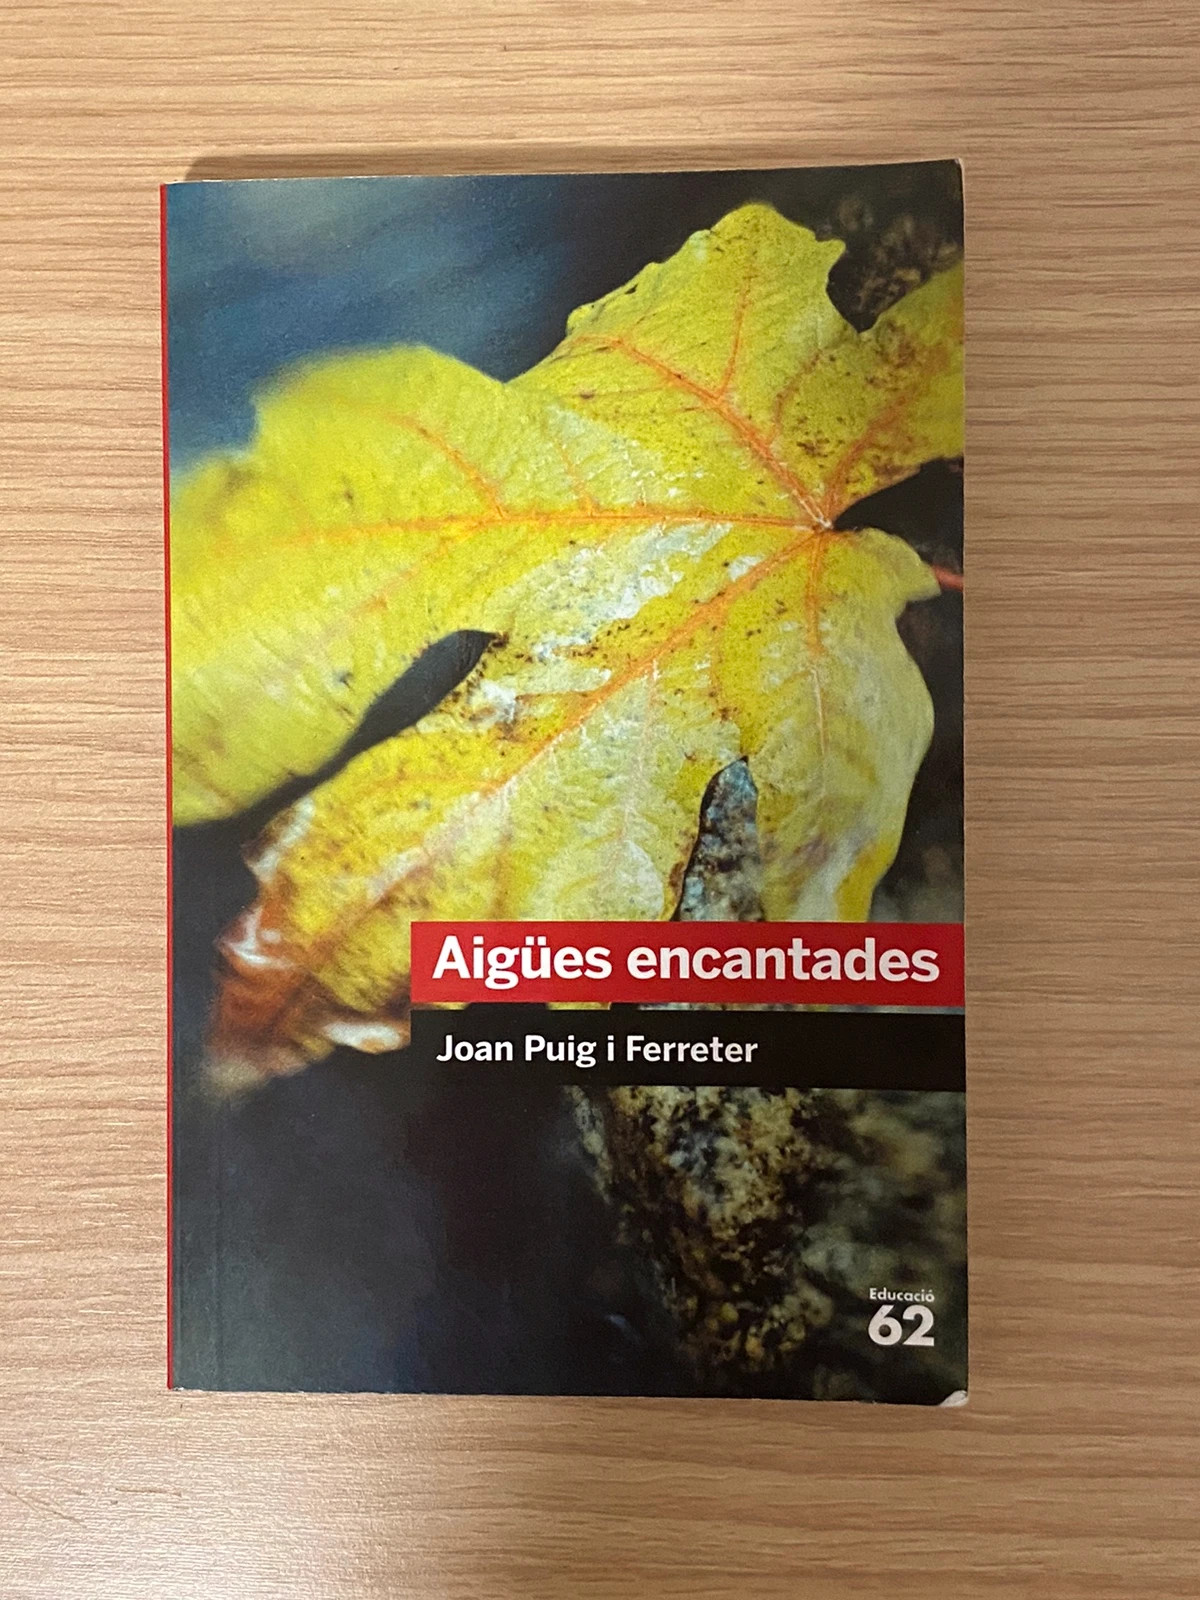 Libro “Aigües encantades” de Joan Puig i Ferreter (catalán)